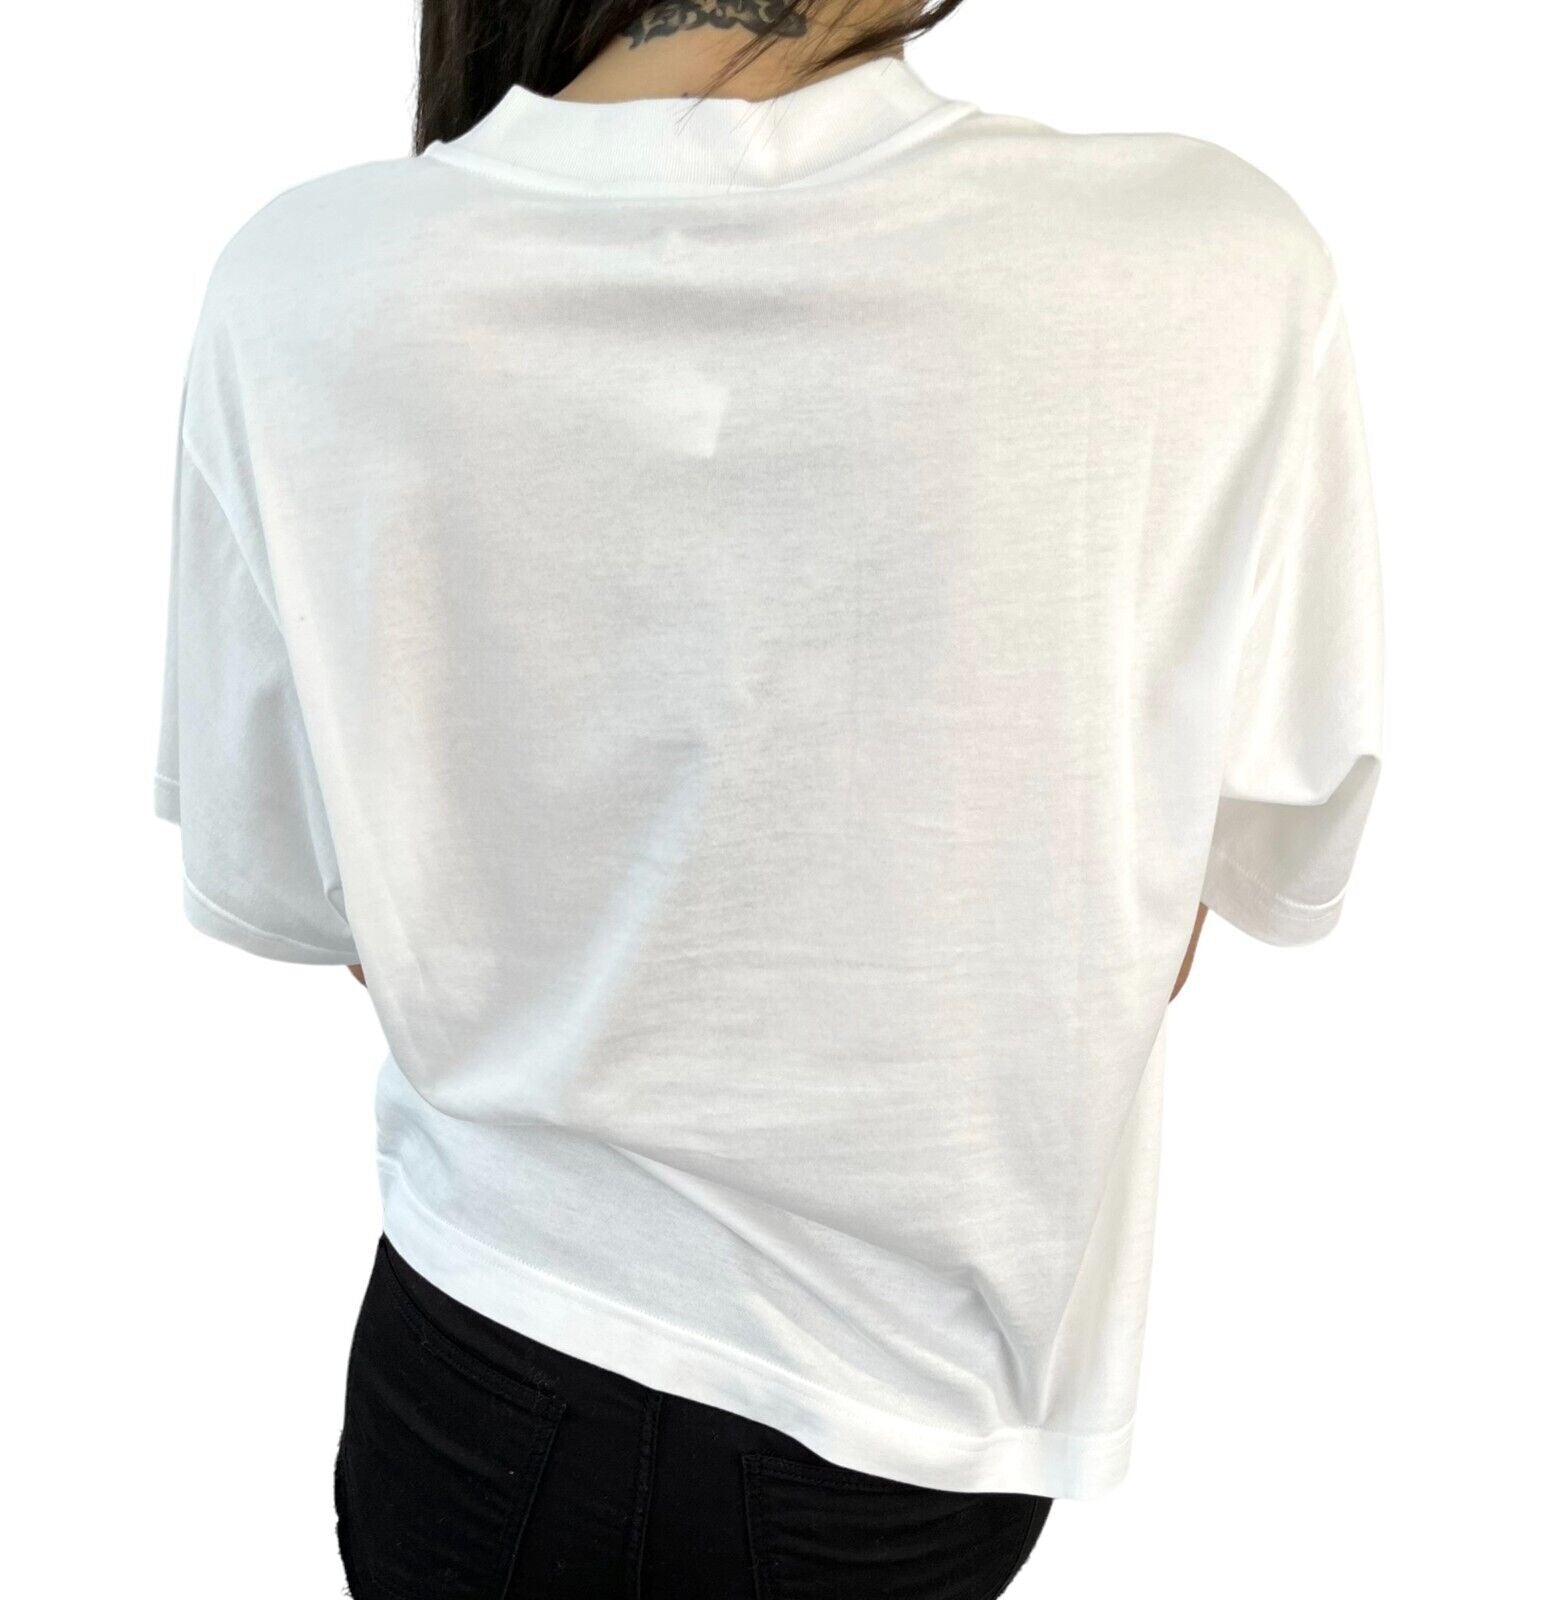 DOLCE&GABBANA Logo T-shirt #XXS Top White Black Cotton I Love Supermodel RankA